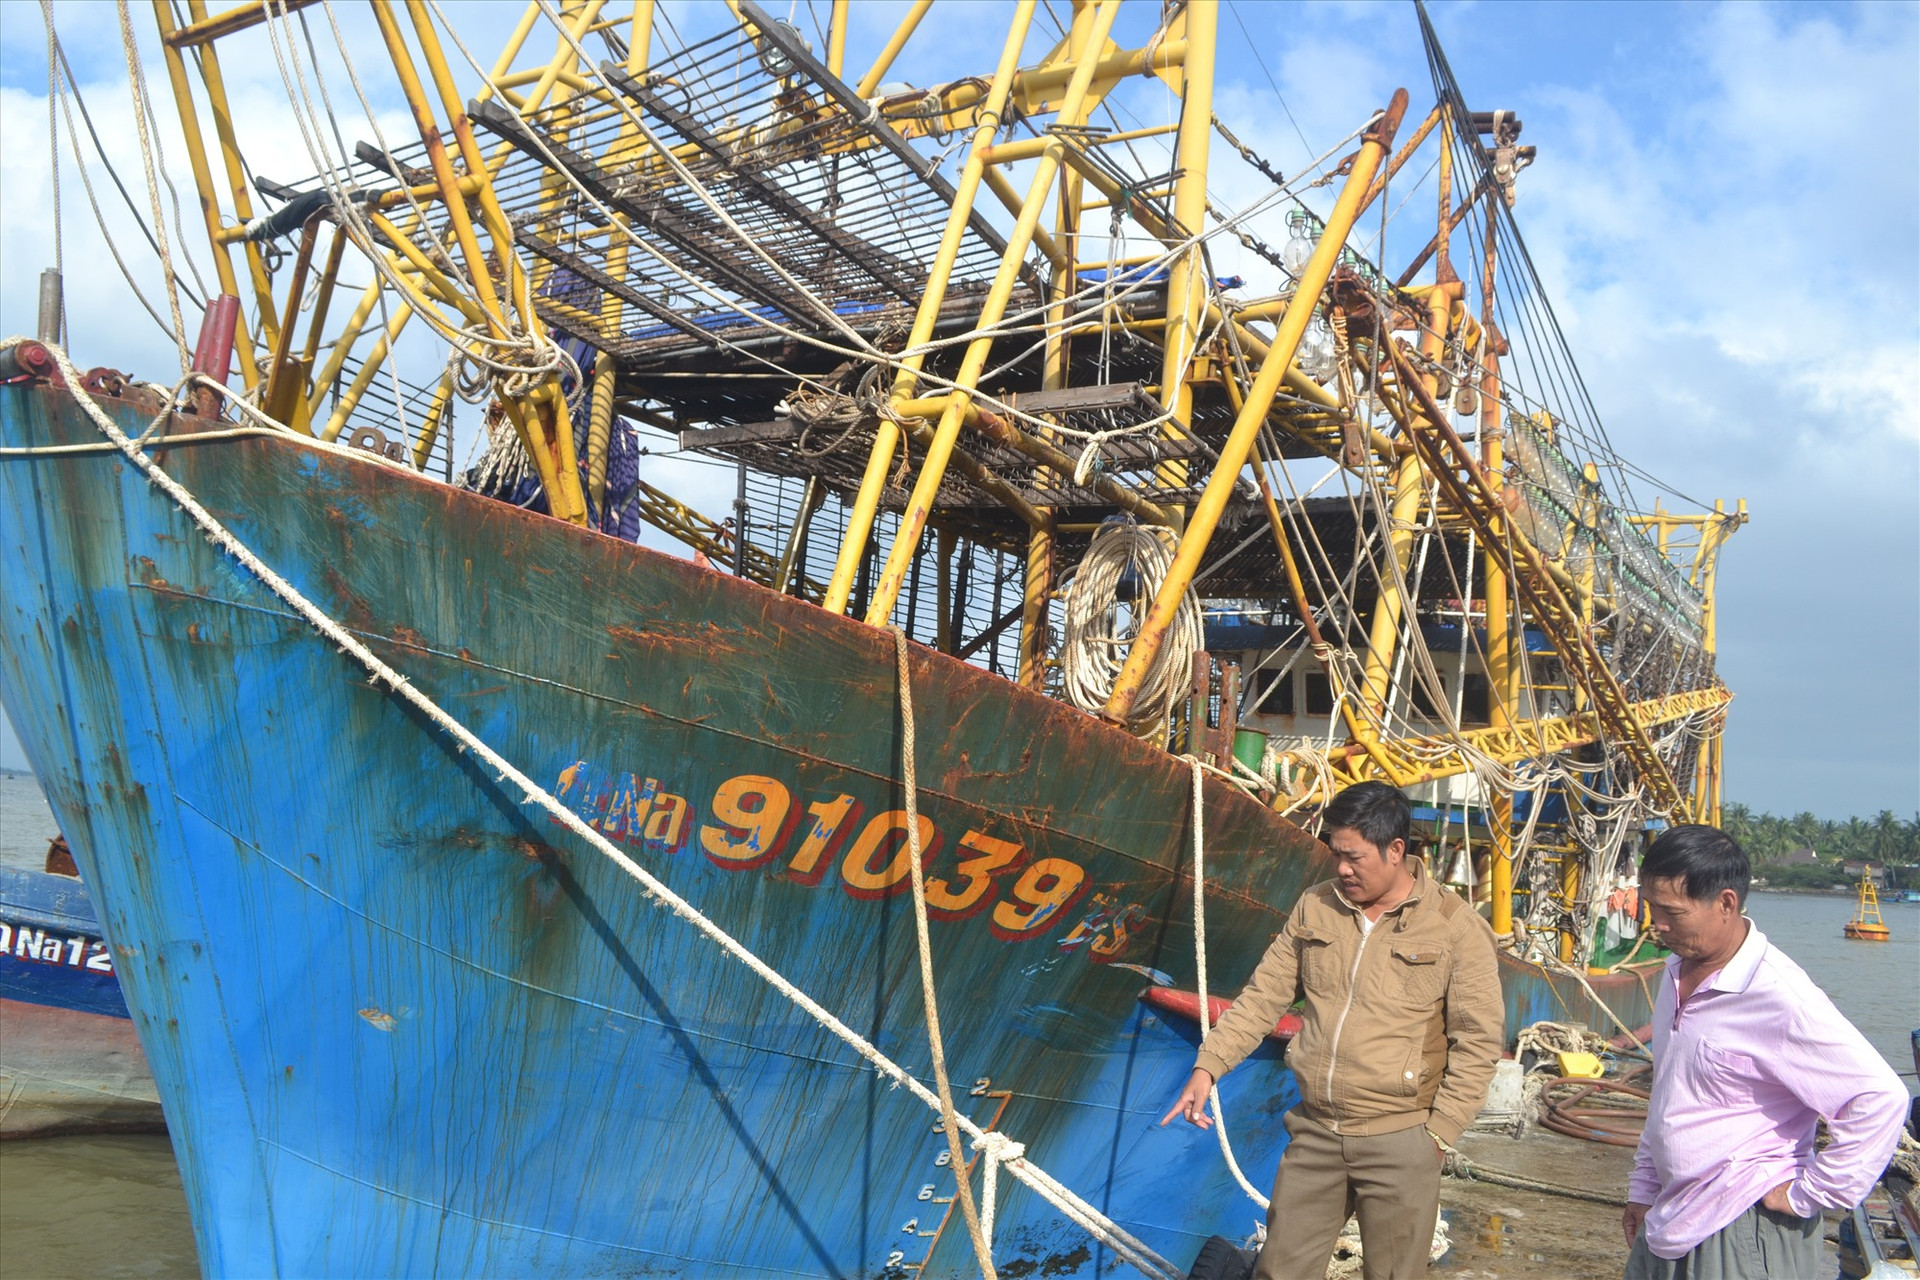 Ngư dân Nguyễn Văn Hùng cho biết tàu vỏ thép đã xuống cấp, rất cần được hỗ trợ duy tu, bảo dưỡng để vươn khơi sản xuất. Ảnh: VIỆT NGUYỄN